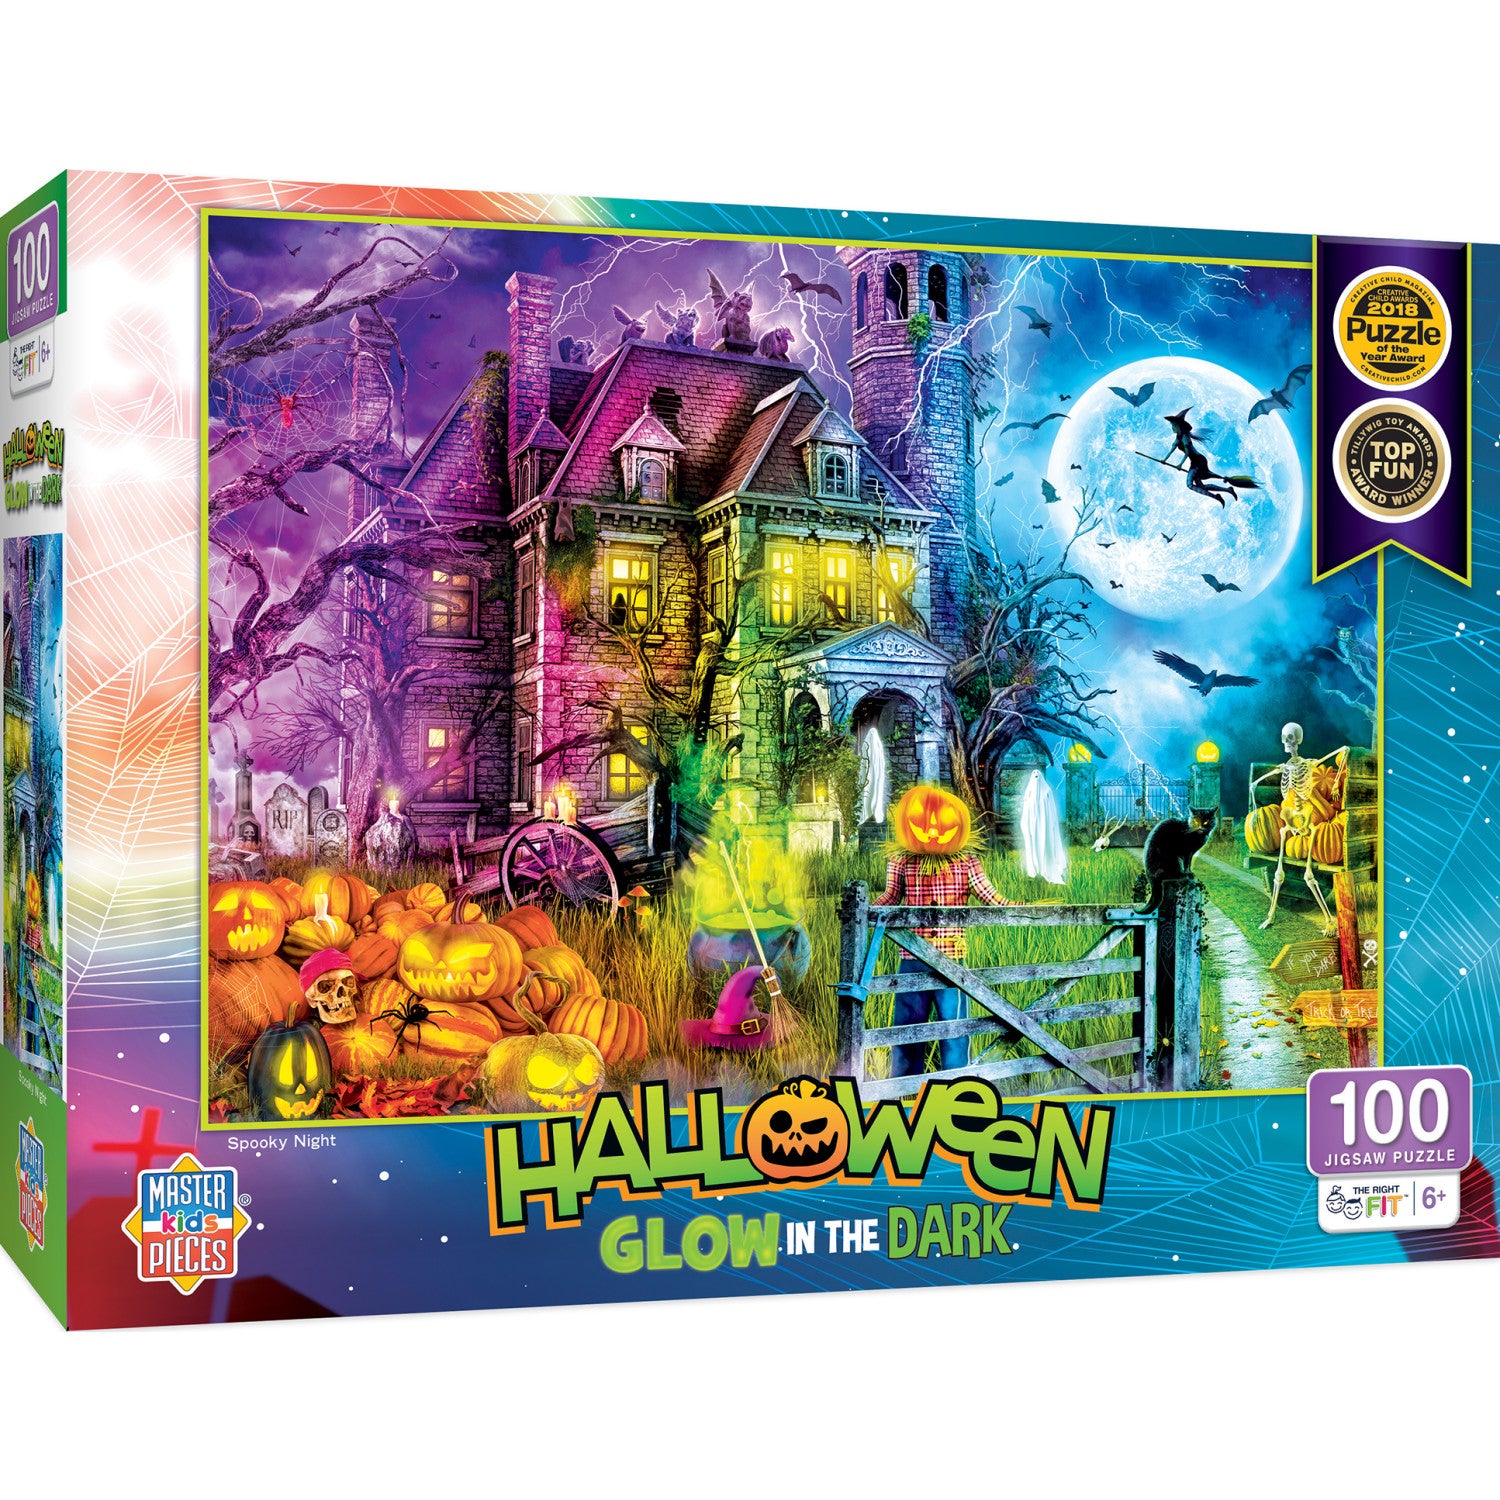 Halloween Glow in the Dark - Spooky Night 100 Piece Jigsaw Puzzle